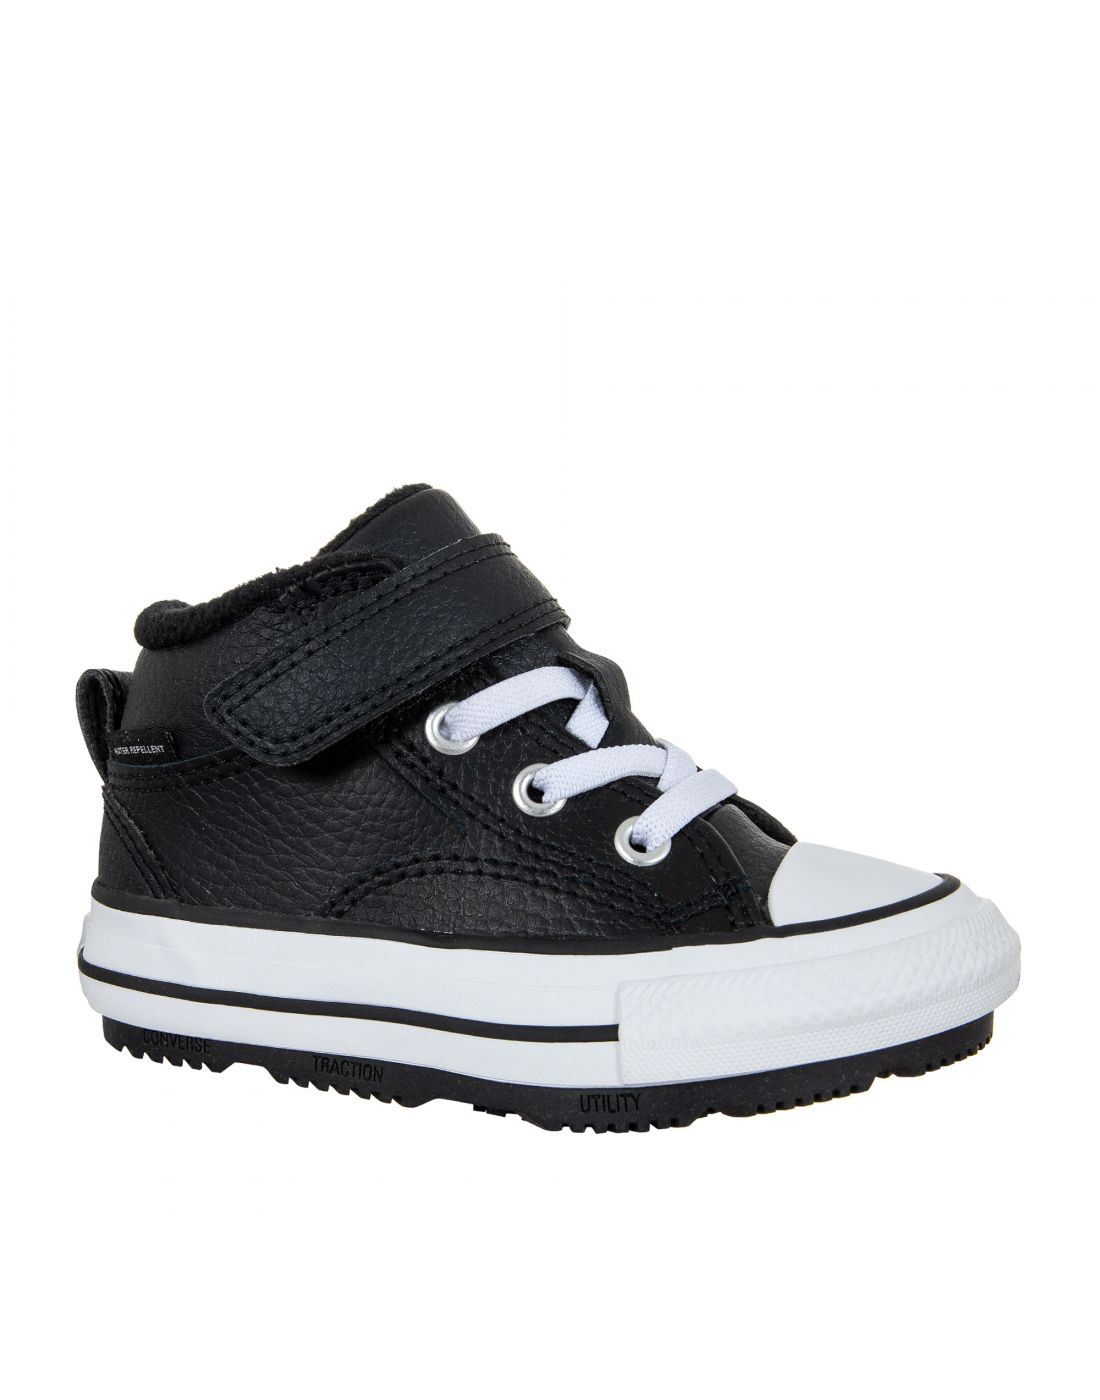 Παιδικά Παπούτσια Sneakers All Star, Converse, 23270396 | LapinKids.com |  LAPIN KIDS